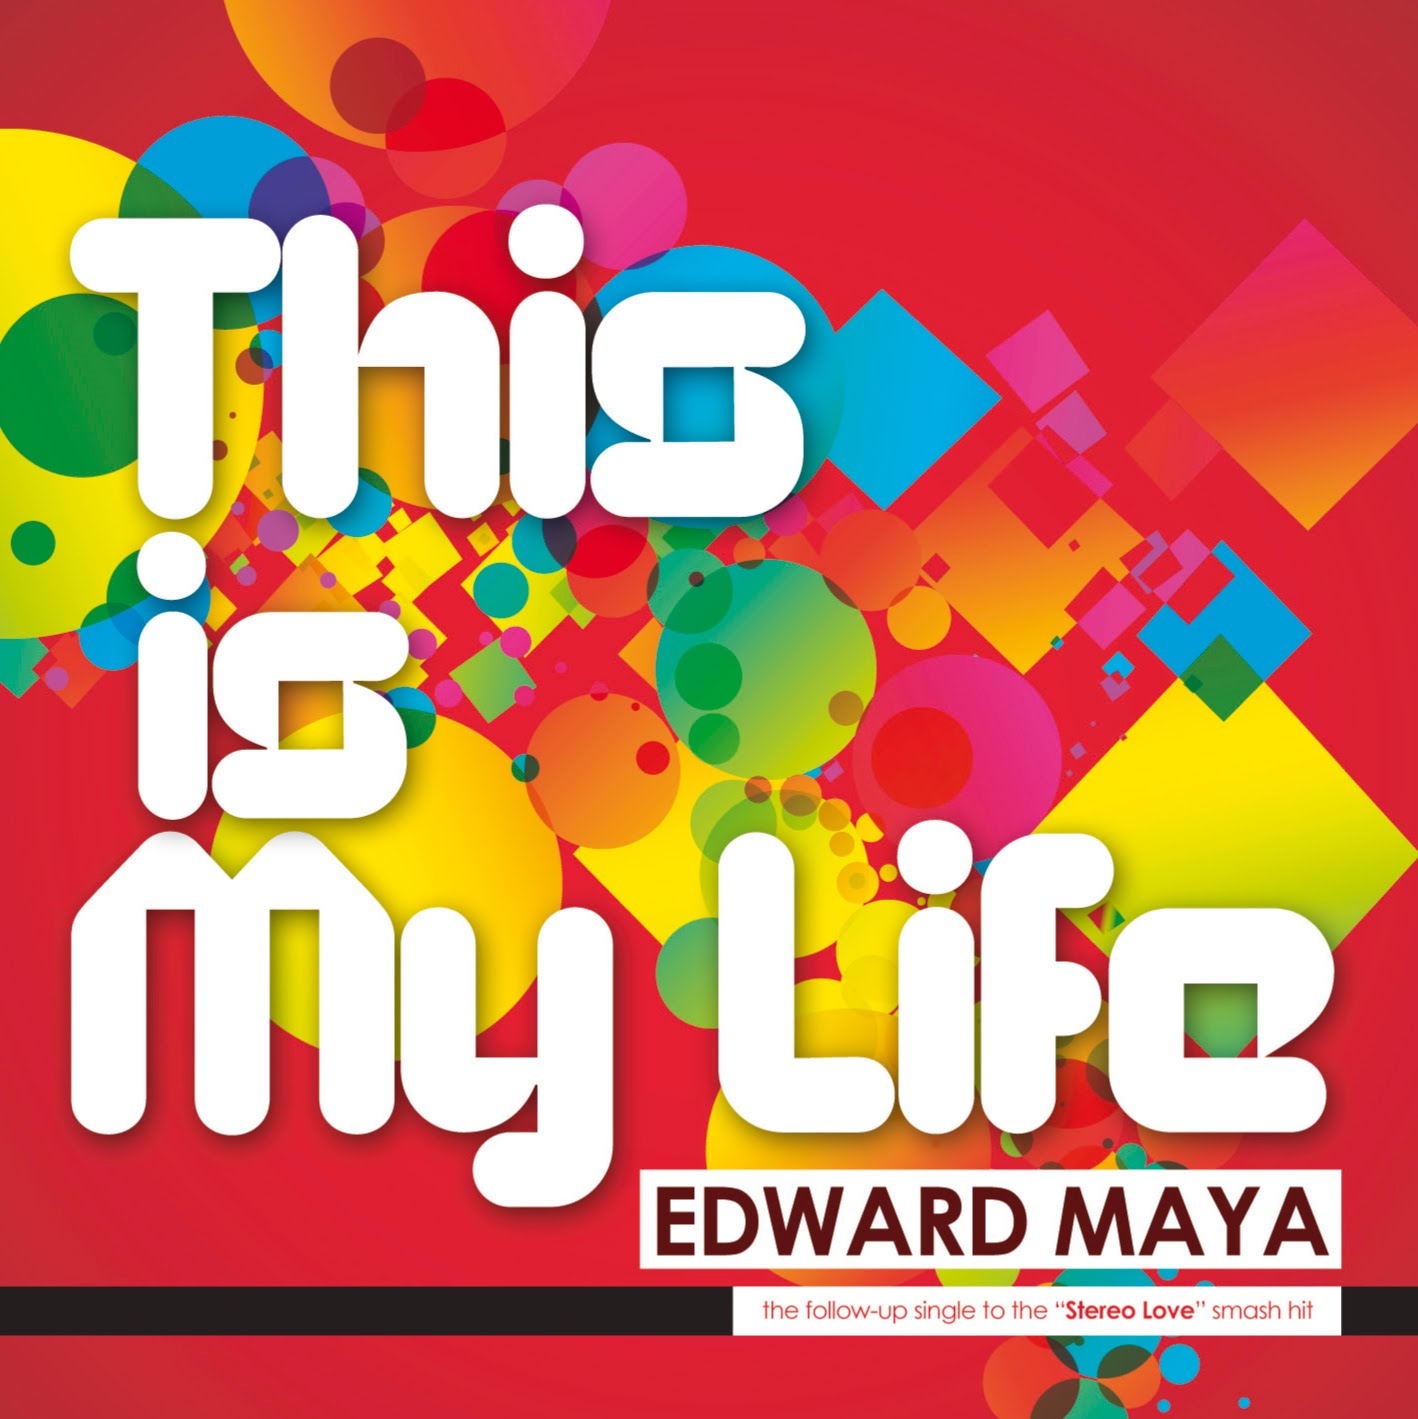 Edvard Maya - This is my life